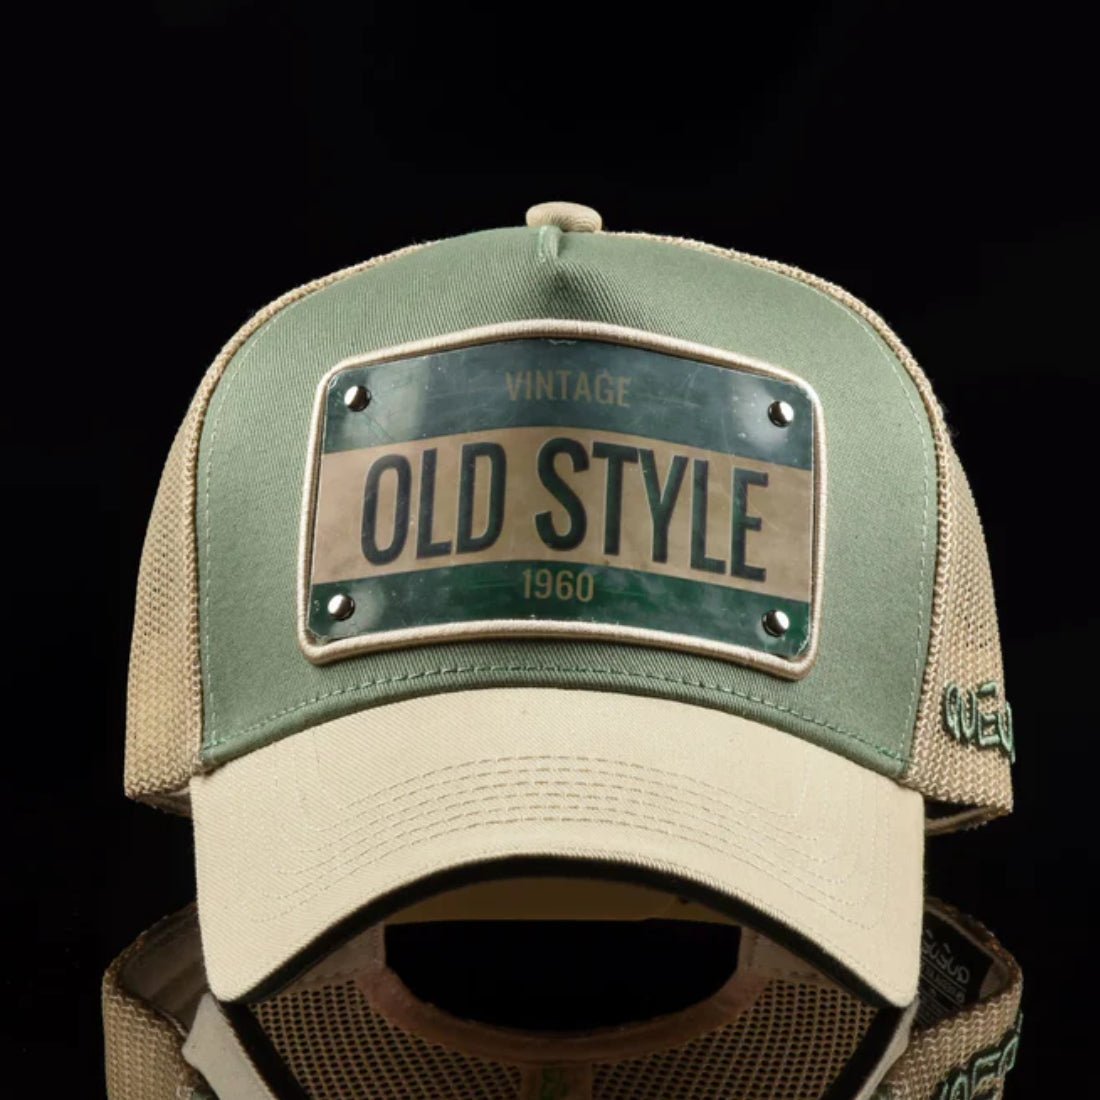 Queue Caps Old Style Cap - Green & Beige - قبعة - Store 974 | ستور ٩٧٤